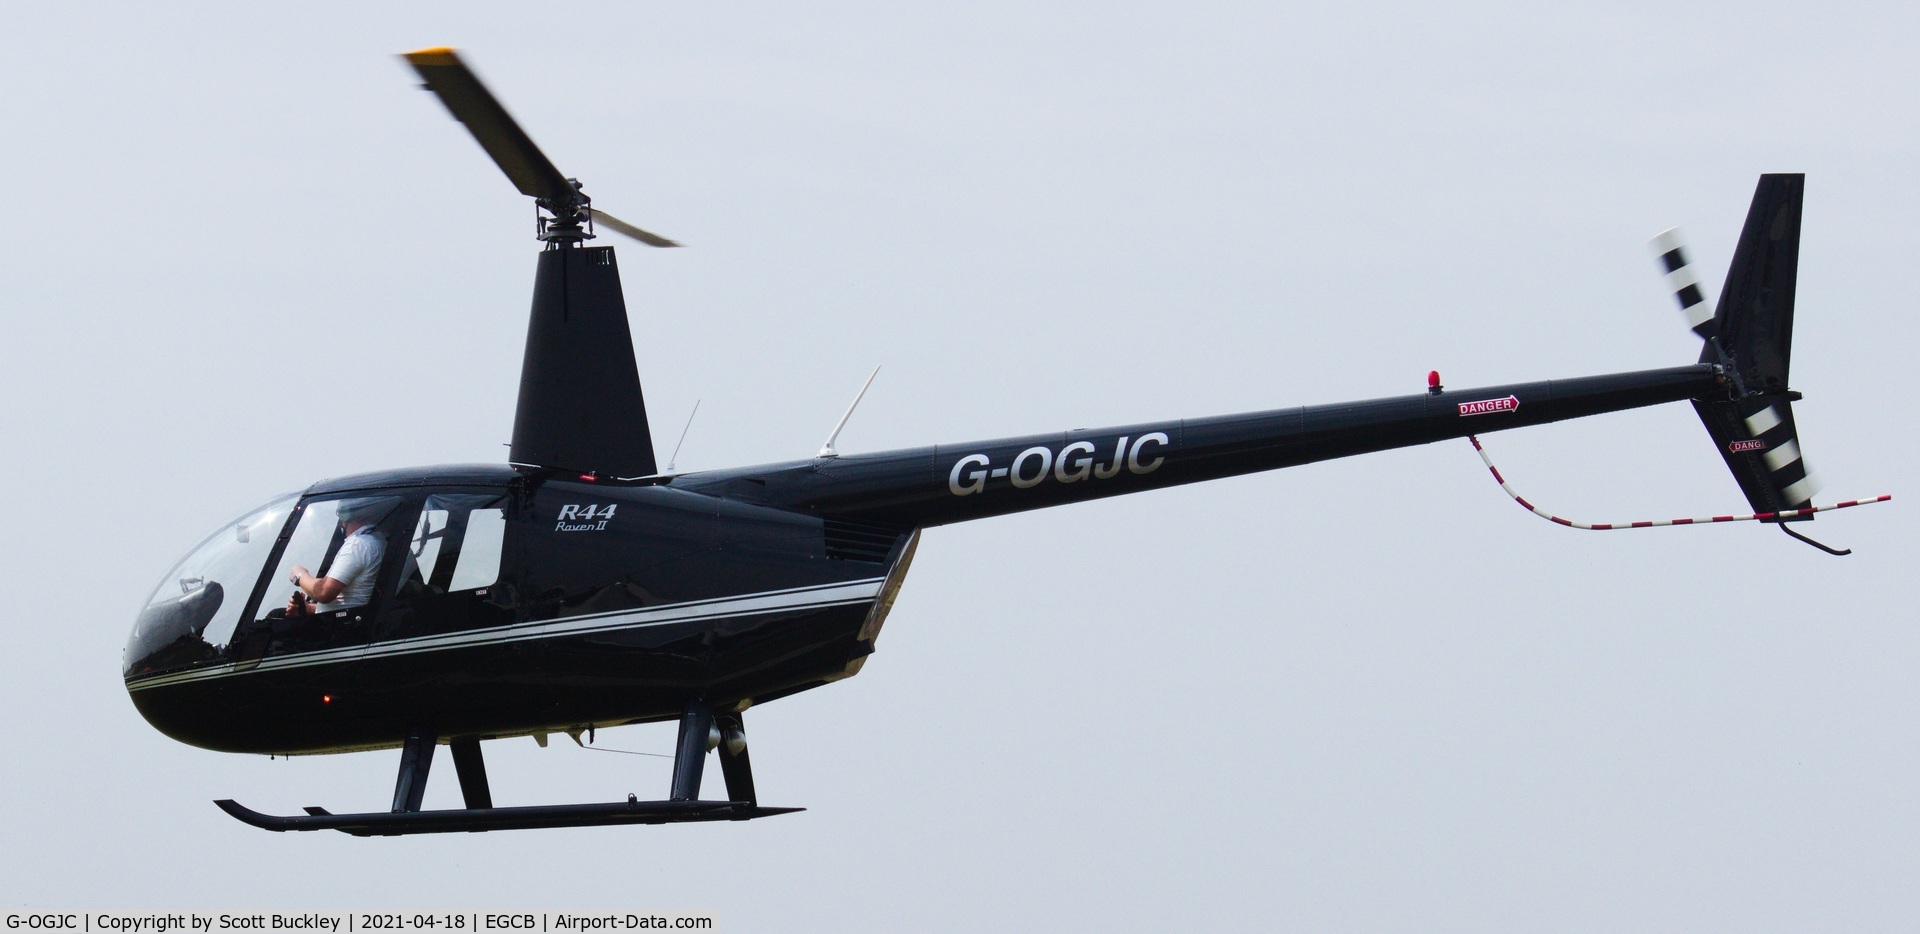 G-OGJC, 2009 Robinson R44 Raven II C/N 11653, G-OGJC flew under instruction at EGCB (Barton).